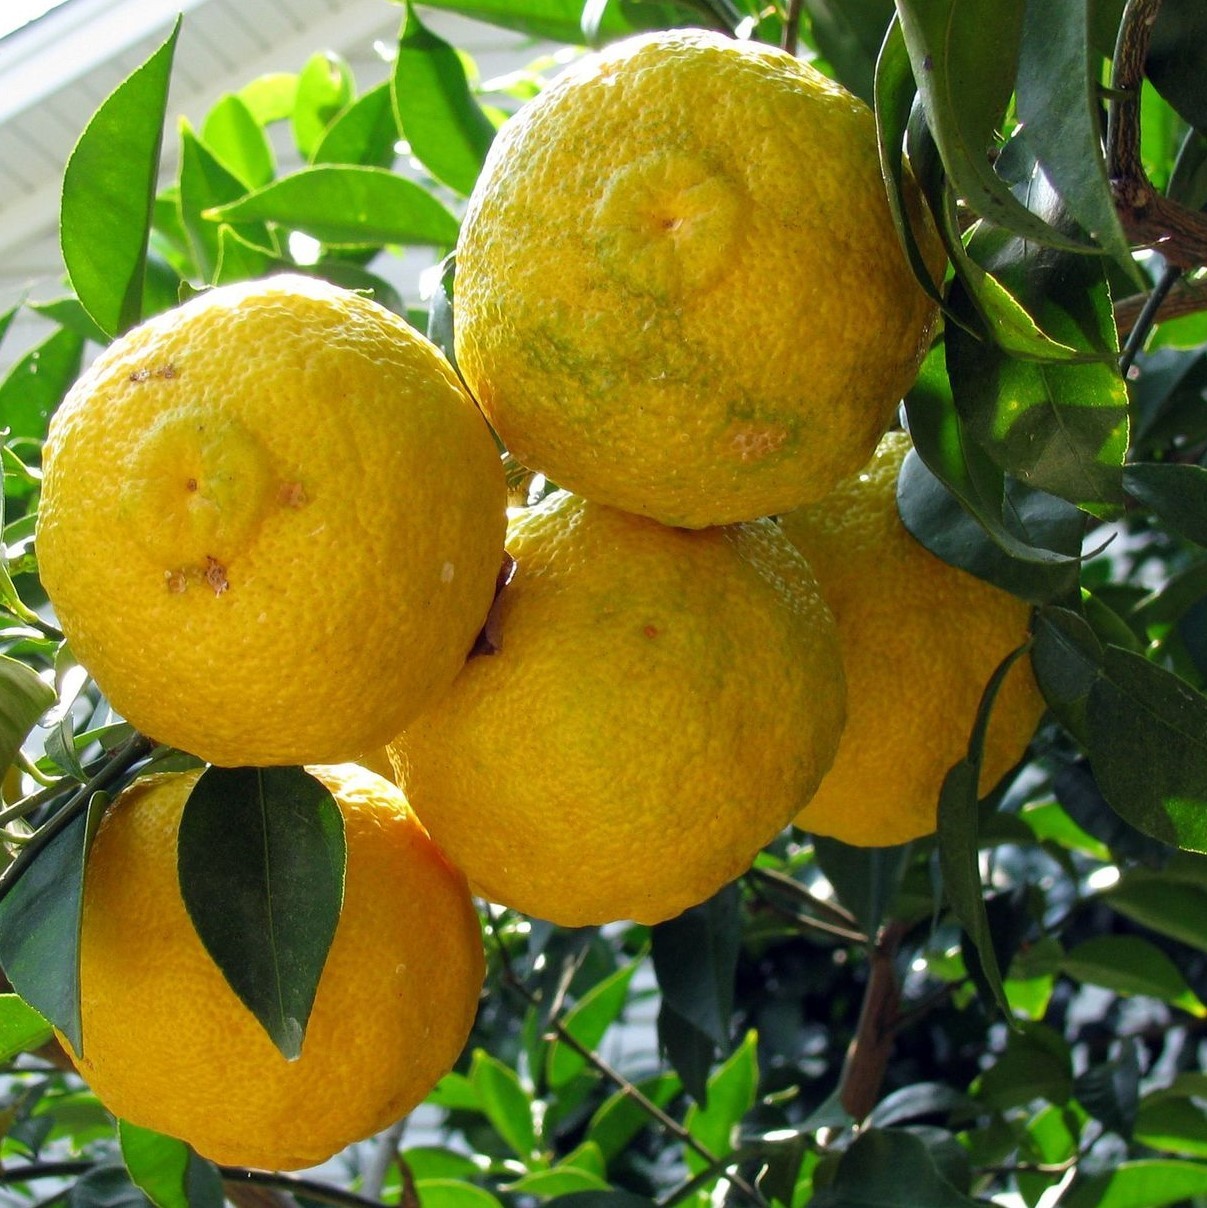 Citronnier épineux Pomeroy - Vente en ligne de plants de